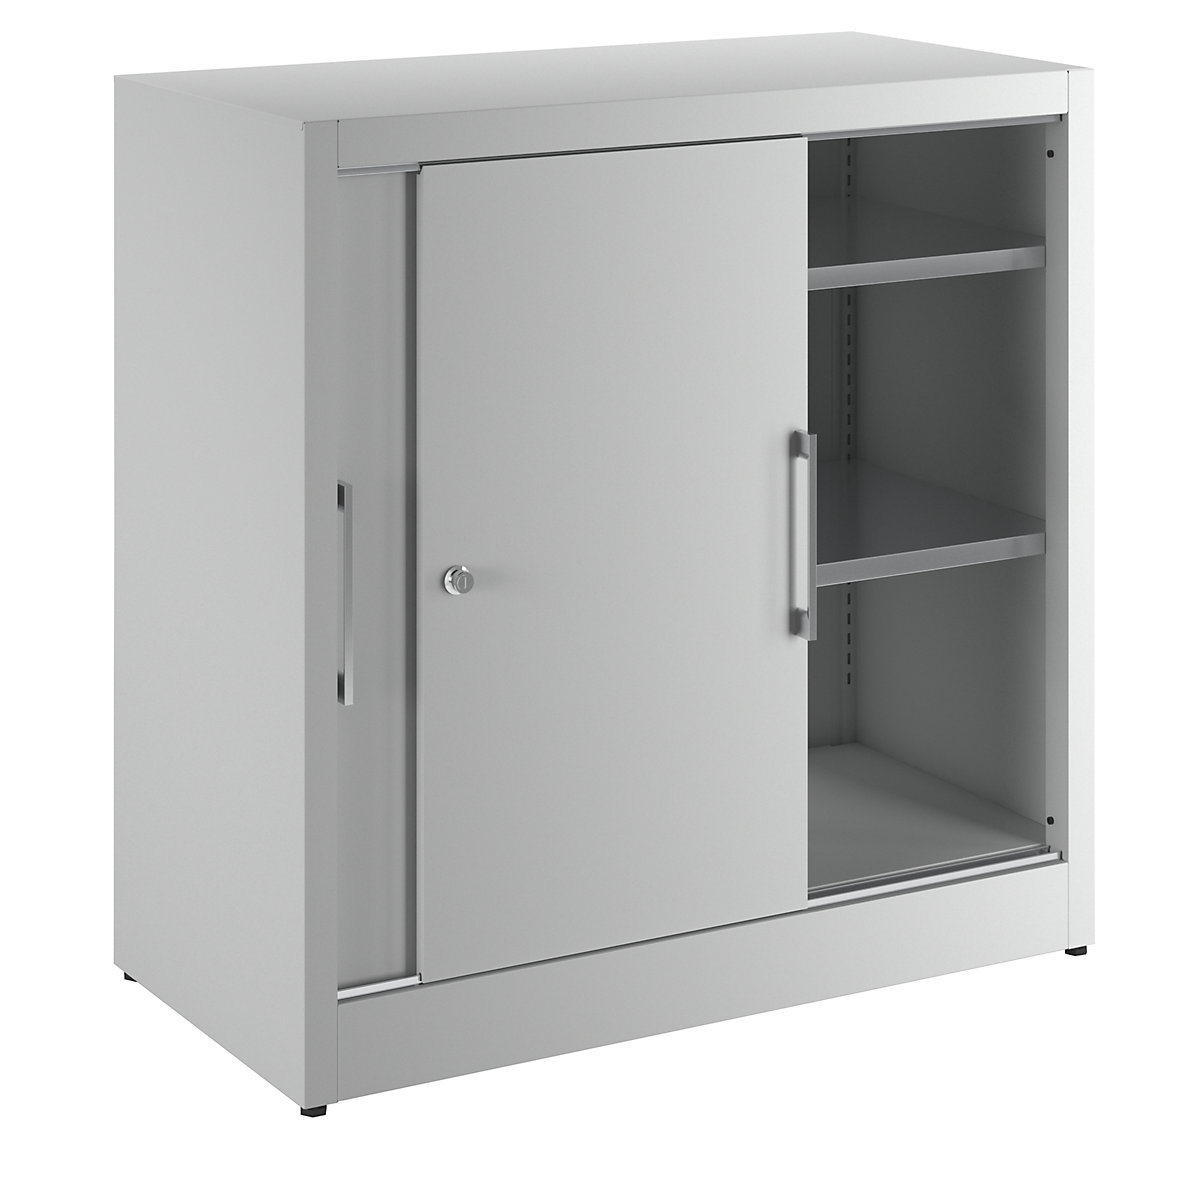 Sliding door cupboard, height 1000 mm – eurokraft pro, with 2 shelves, depth 500 mm, doors in light grey RAL 7035-7